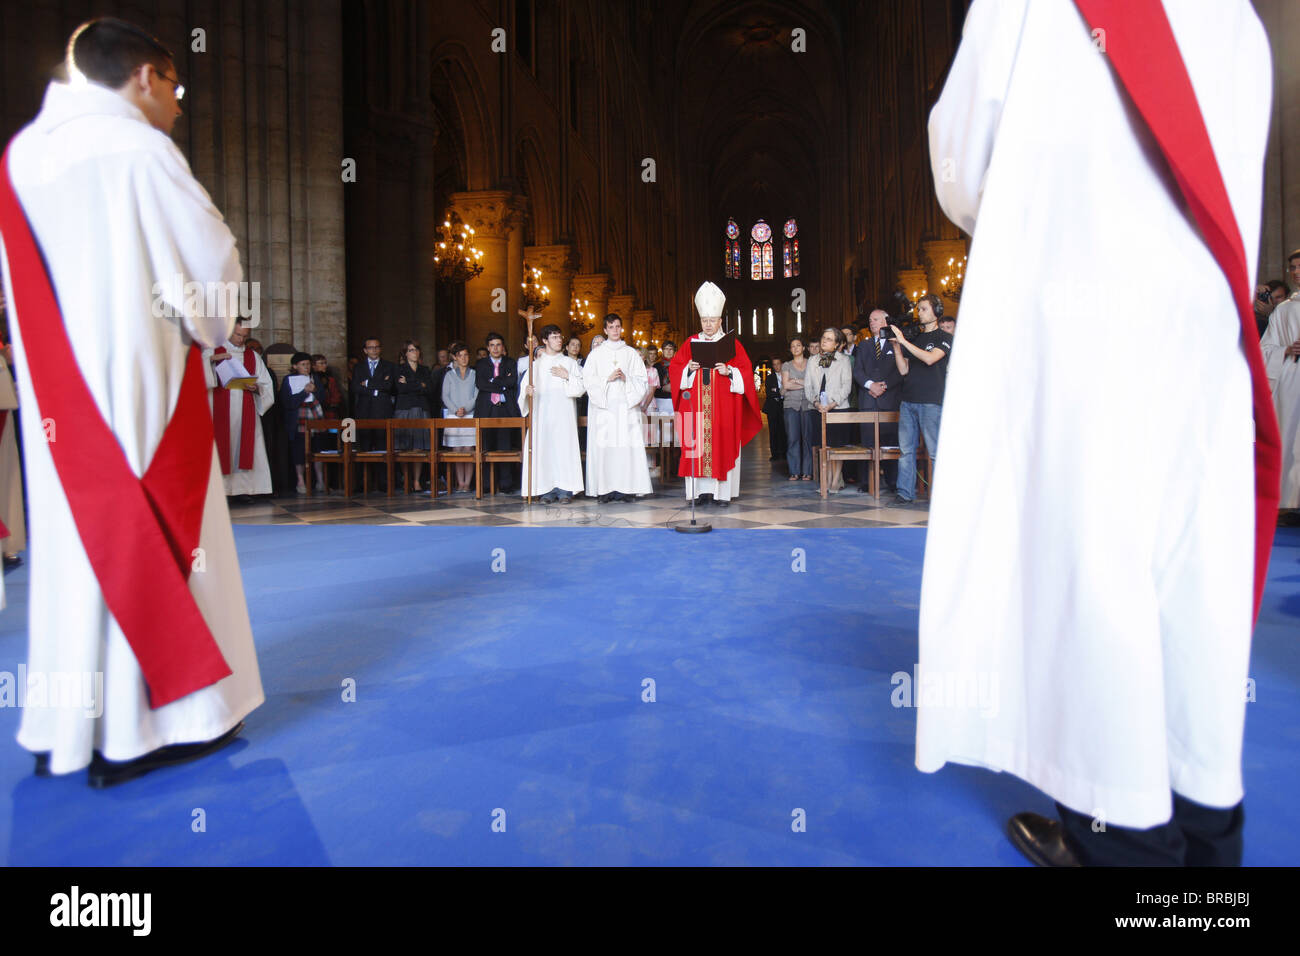 Priest ordinations at Notre Dame de Paris Cathedral, Paris, France Stock Photo